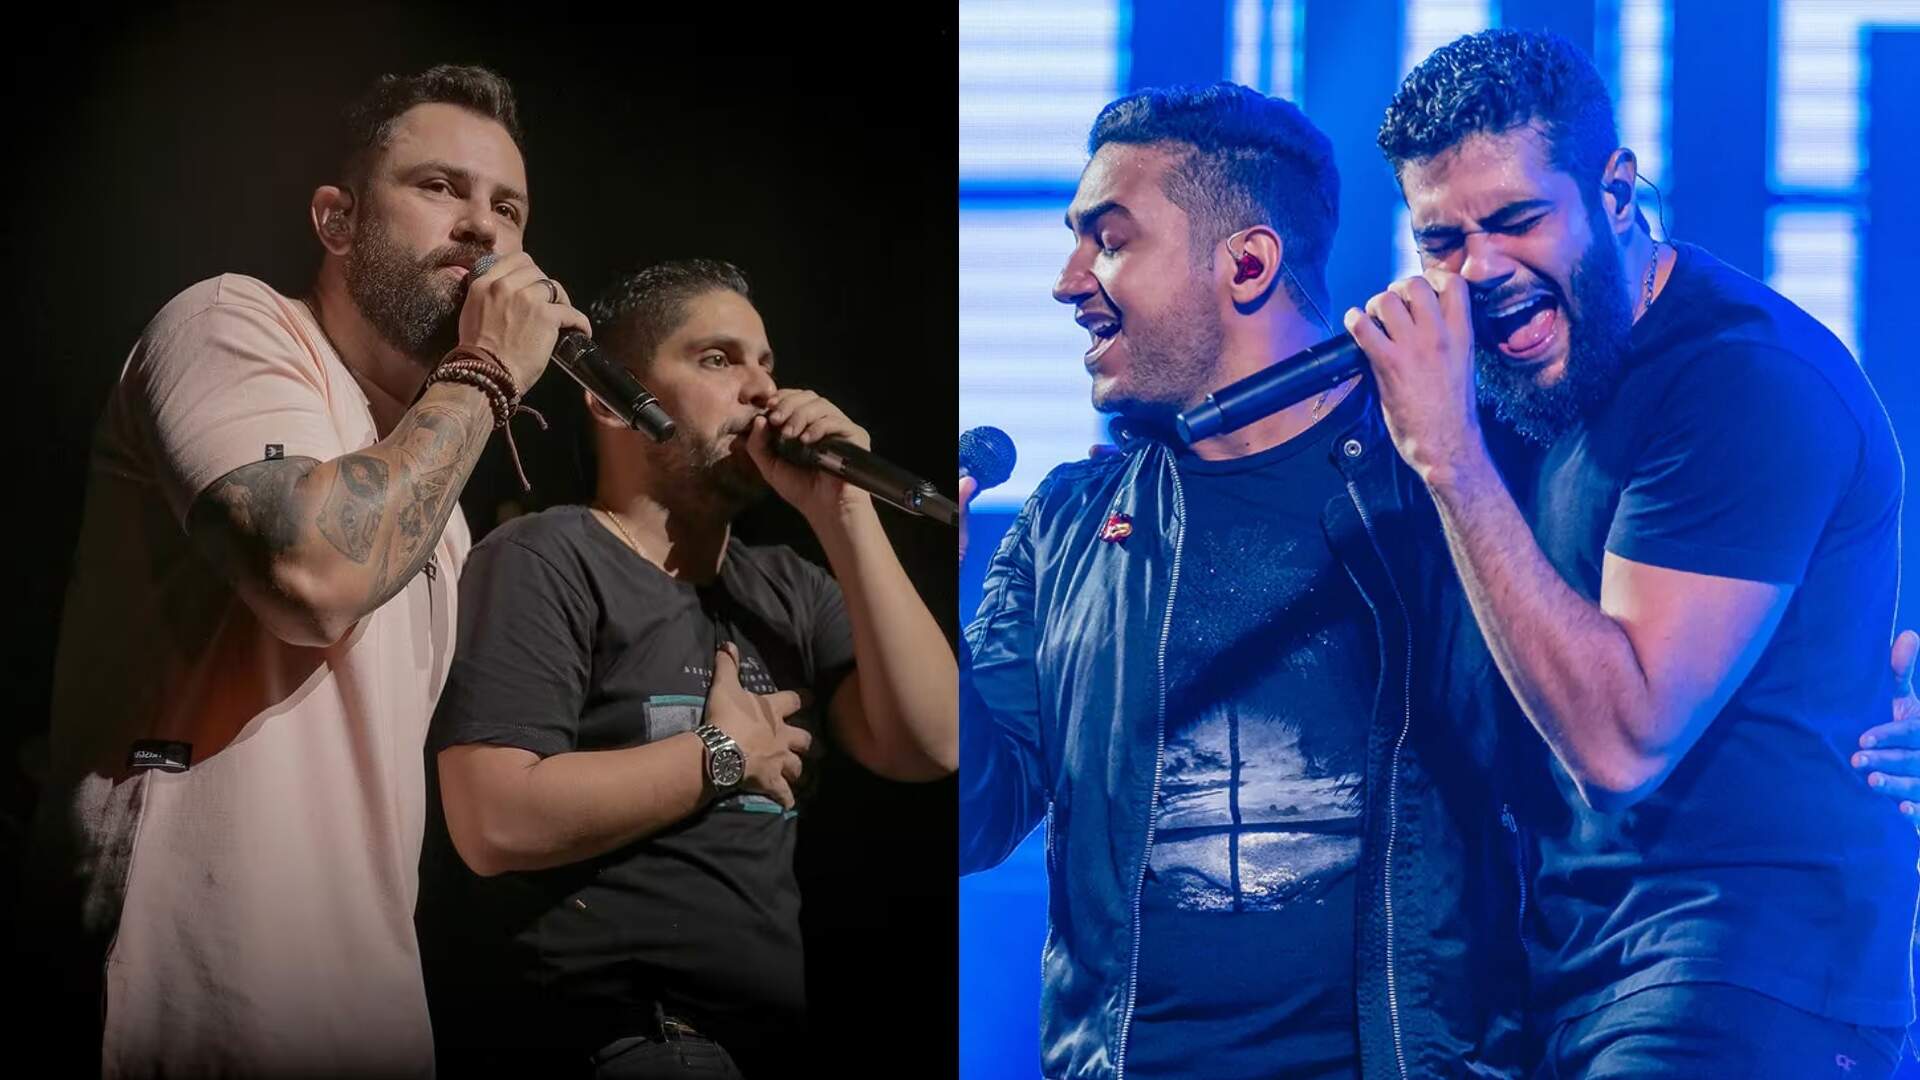 Música nova vindo aí?! Jorge & Mateus revelam motivo de ainda não terem uma parceria com Henrique & Juliano - Metropolitana FM